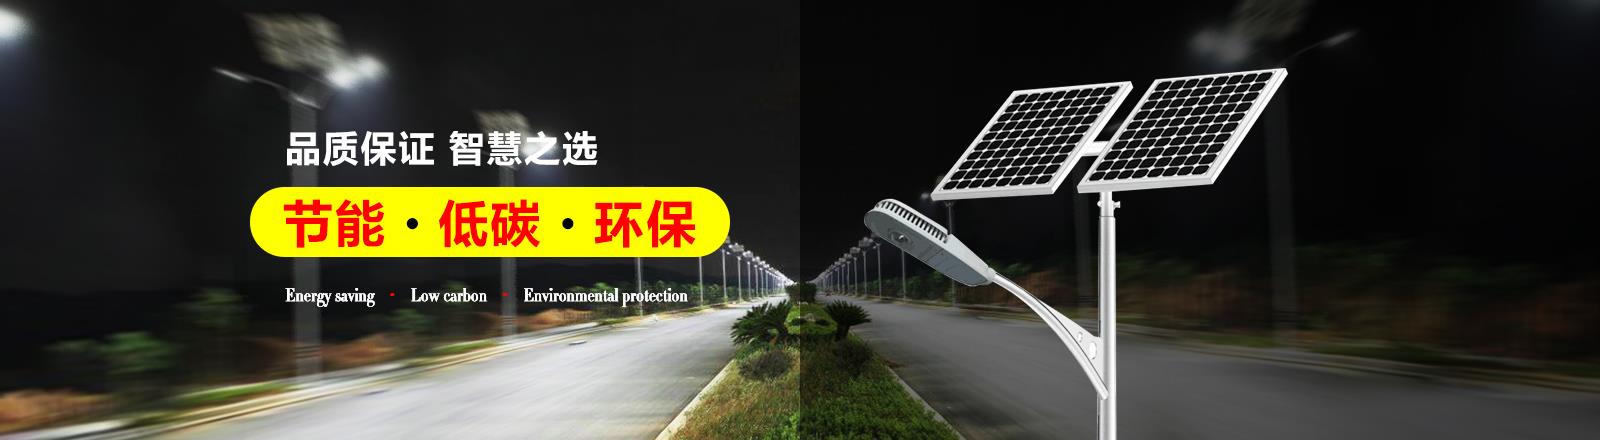 太陽能景觀燈_6米太陽能路燈_太陽能高桿燈廠家-揚州市浩騰照明器材有限公司